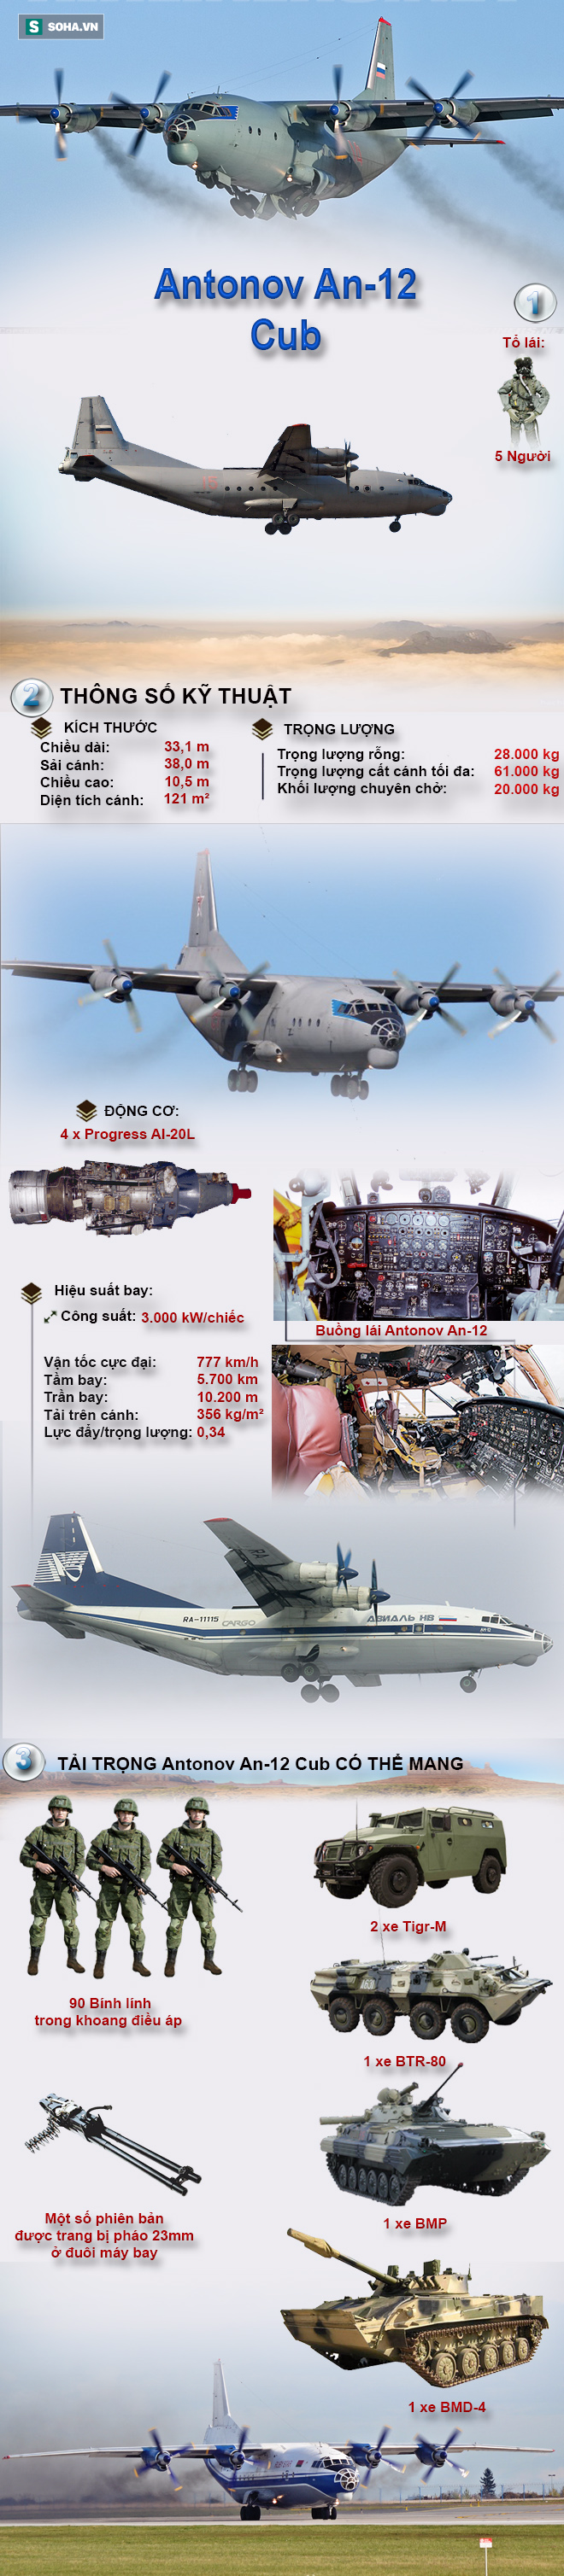 Chiếc máy bay vận tải từng được Việt Nam đưa vào tầm ngắm để thay thế C-130 - Ảnh 1.